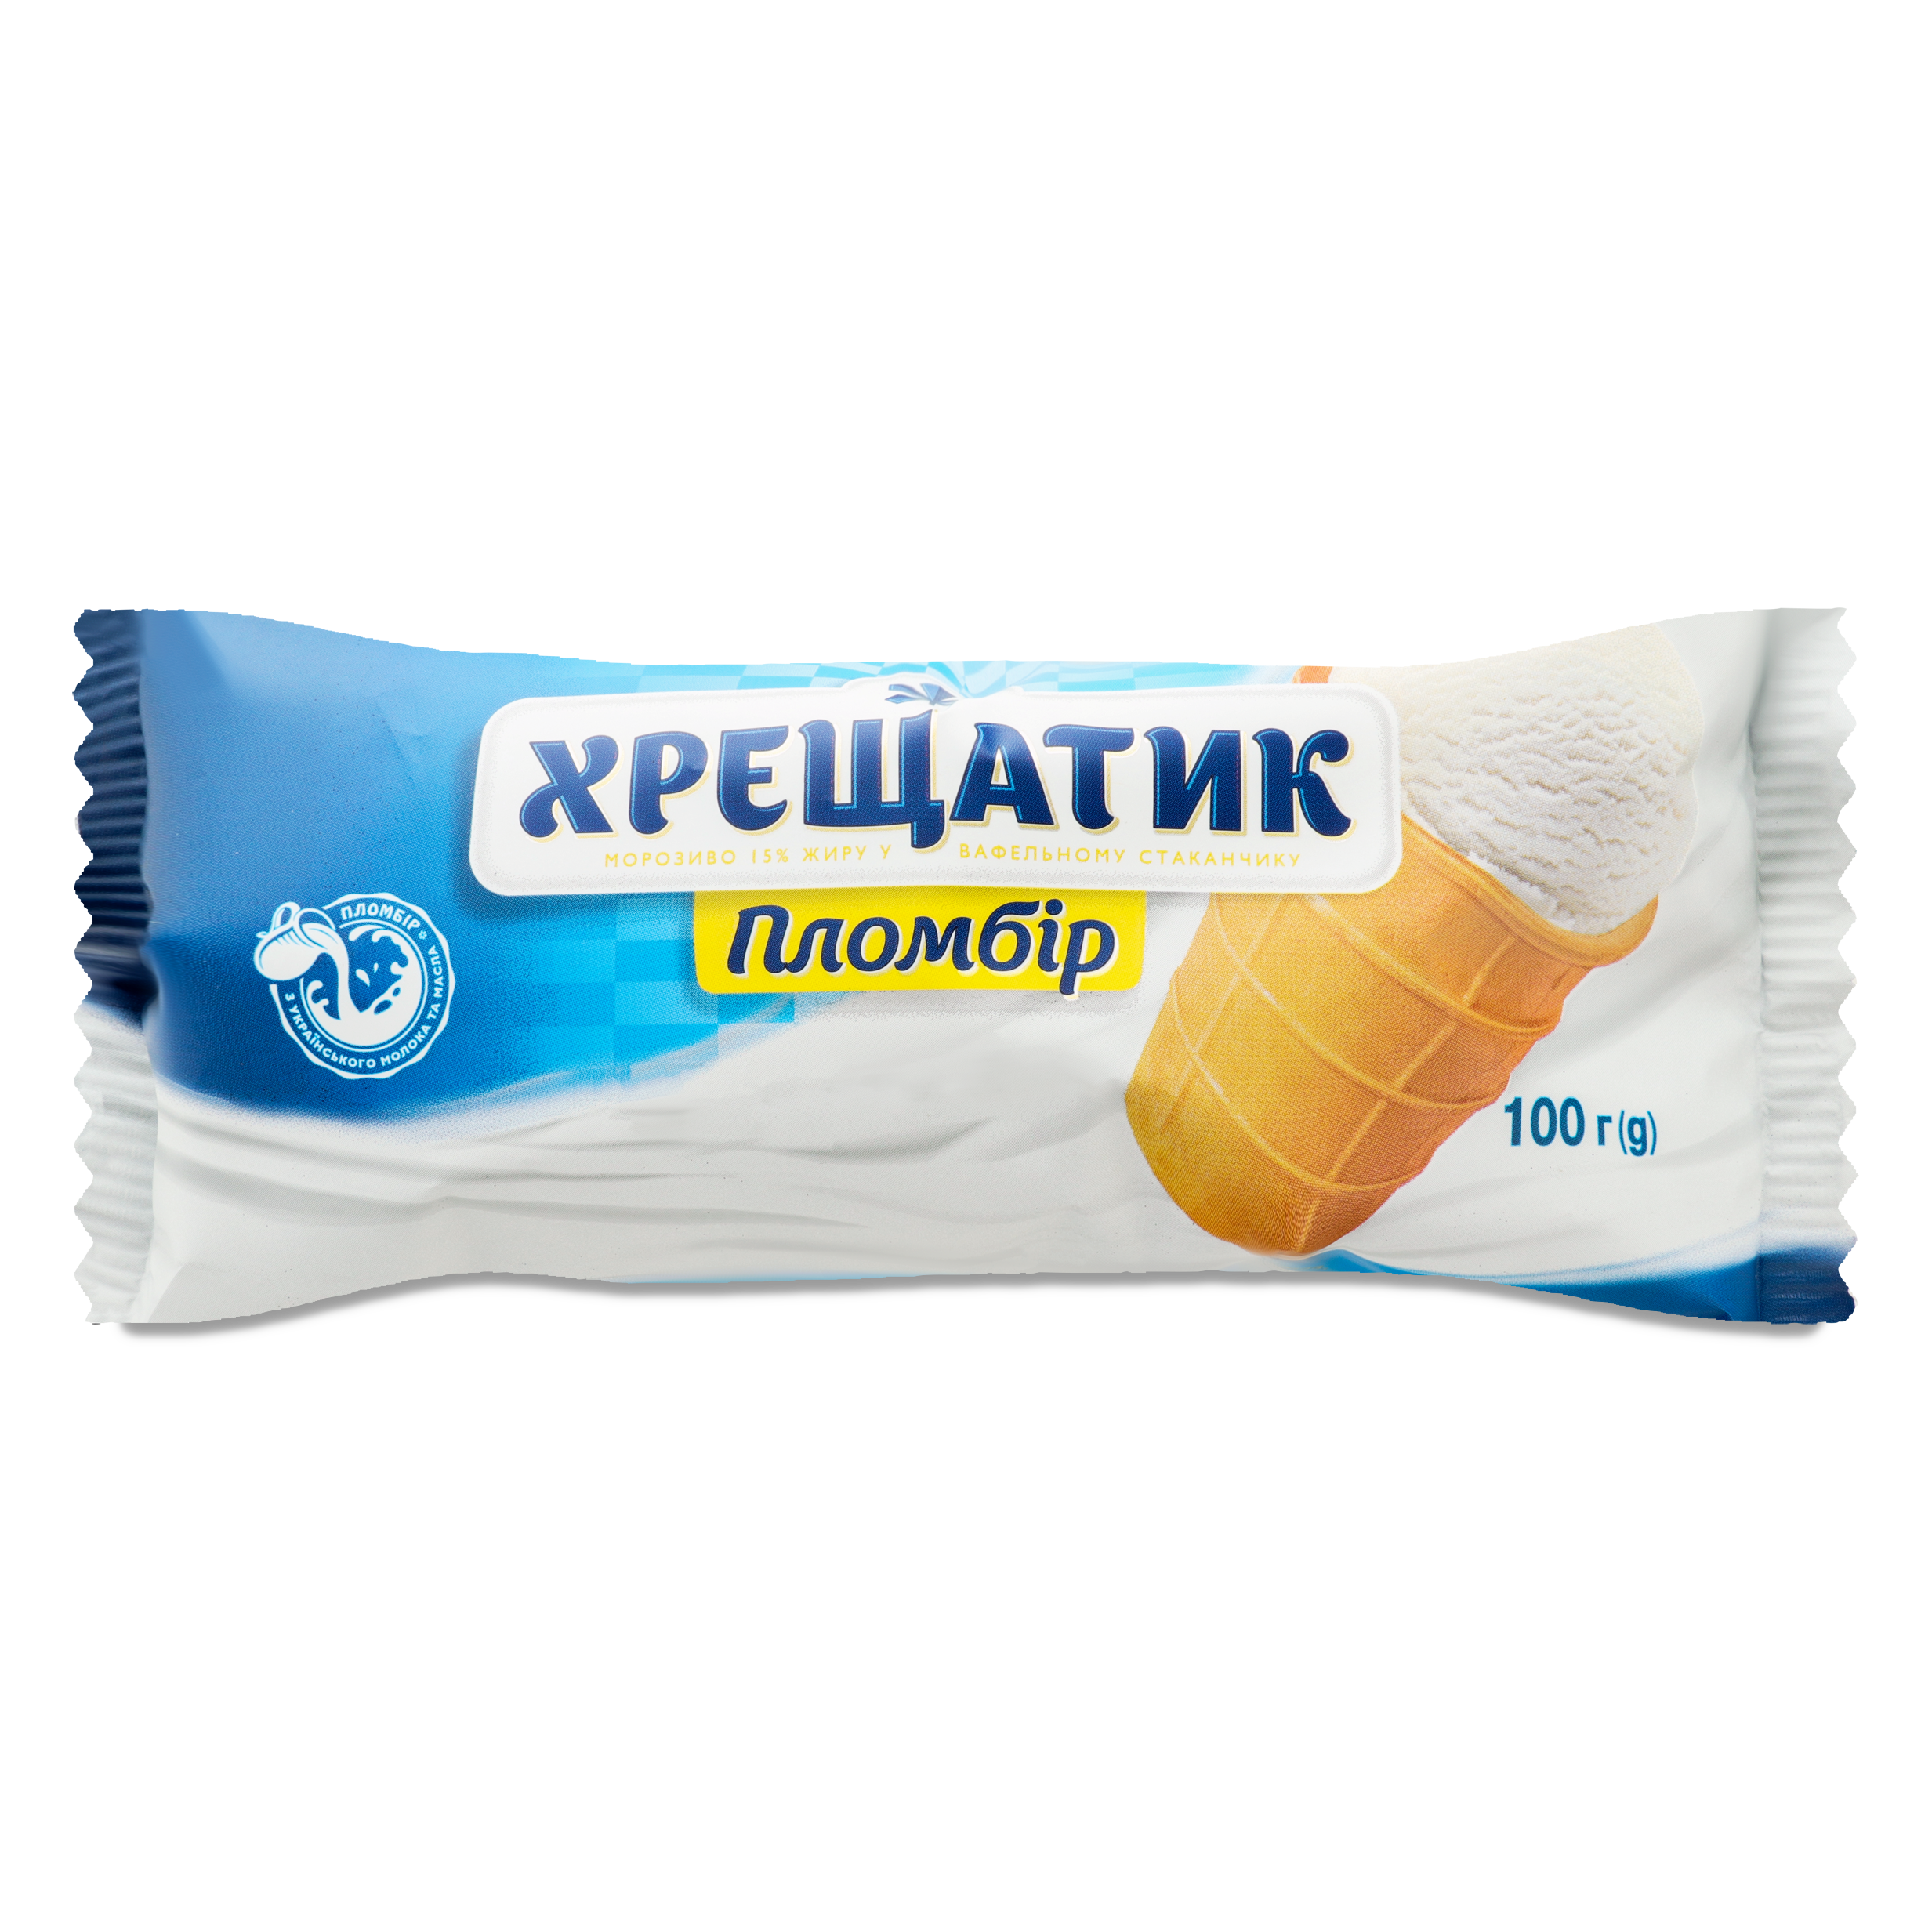 Hladyk Khreshchatyk ice-cream 100g 2